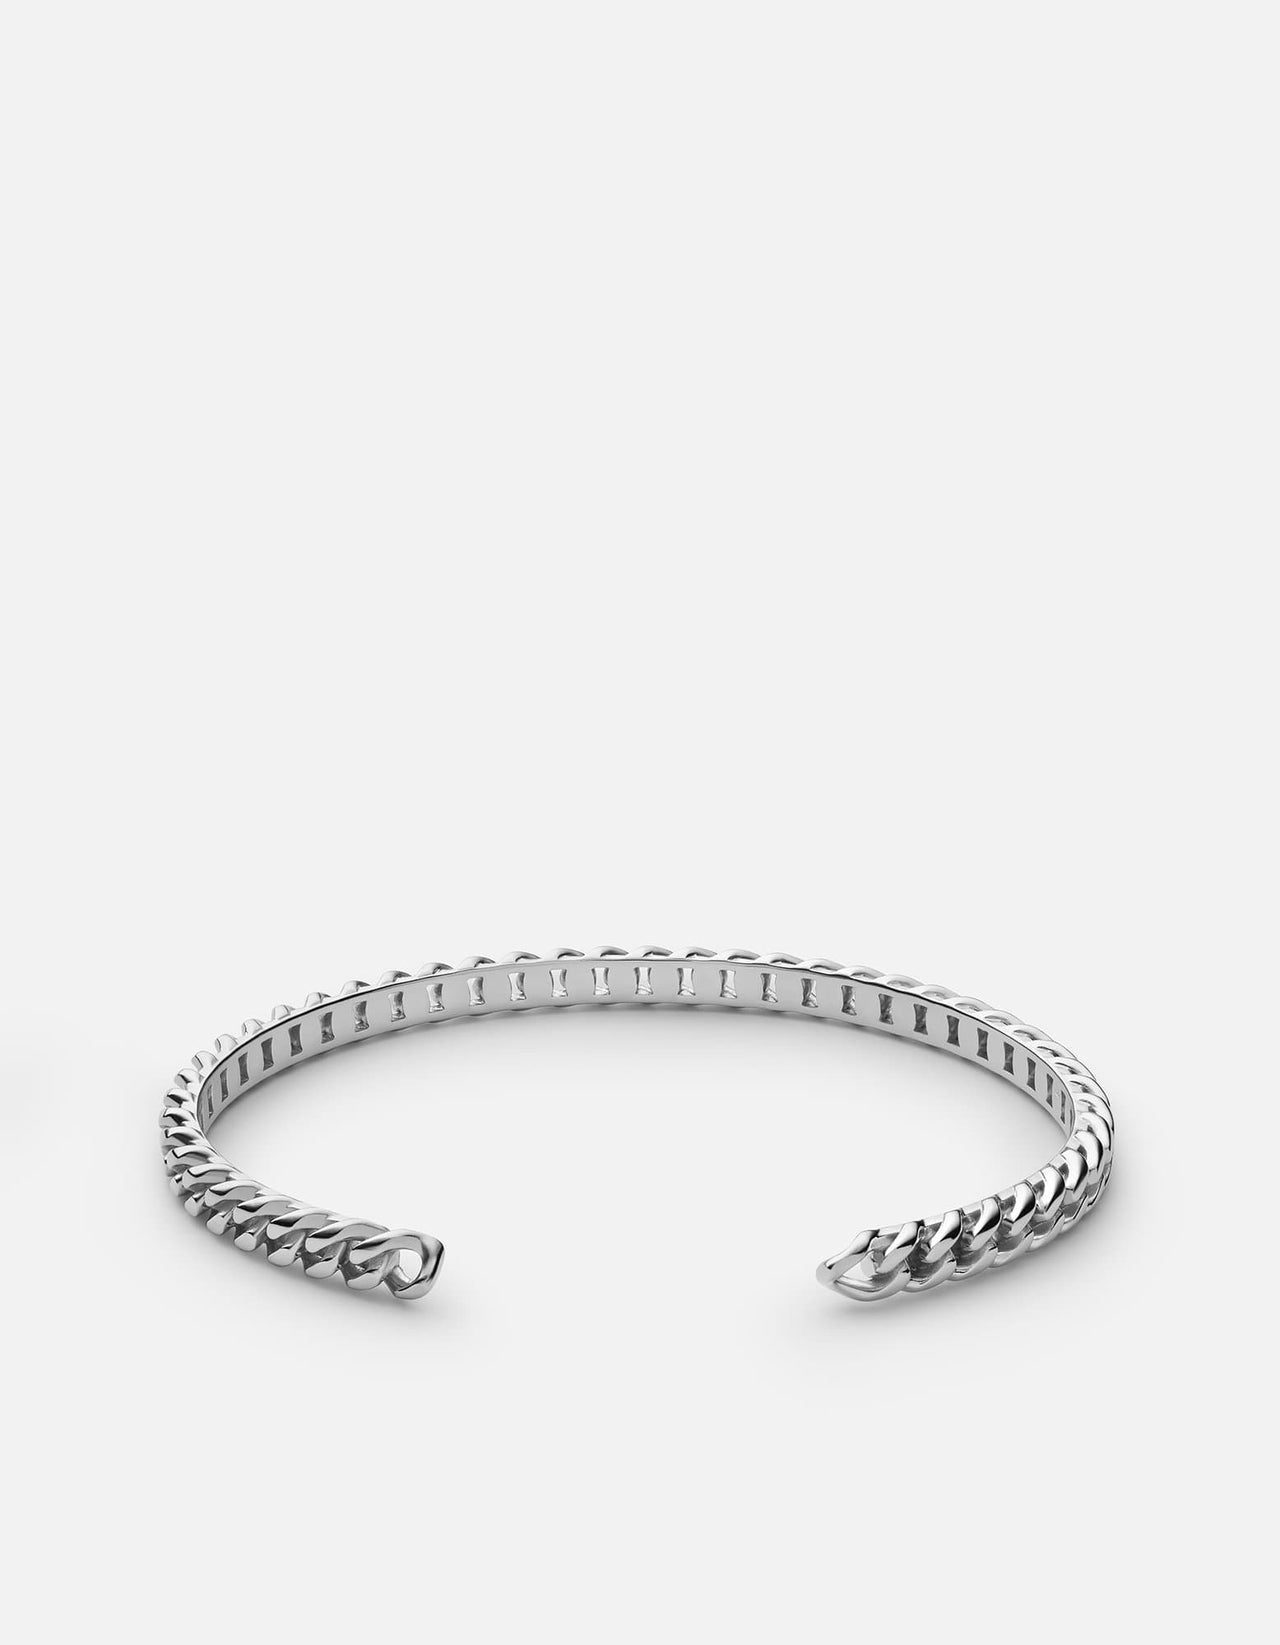 Miansai Men's 6.5mm Cuban Chain Necklace, Gold Vermeil, Size 21 in.